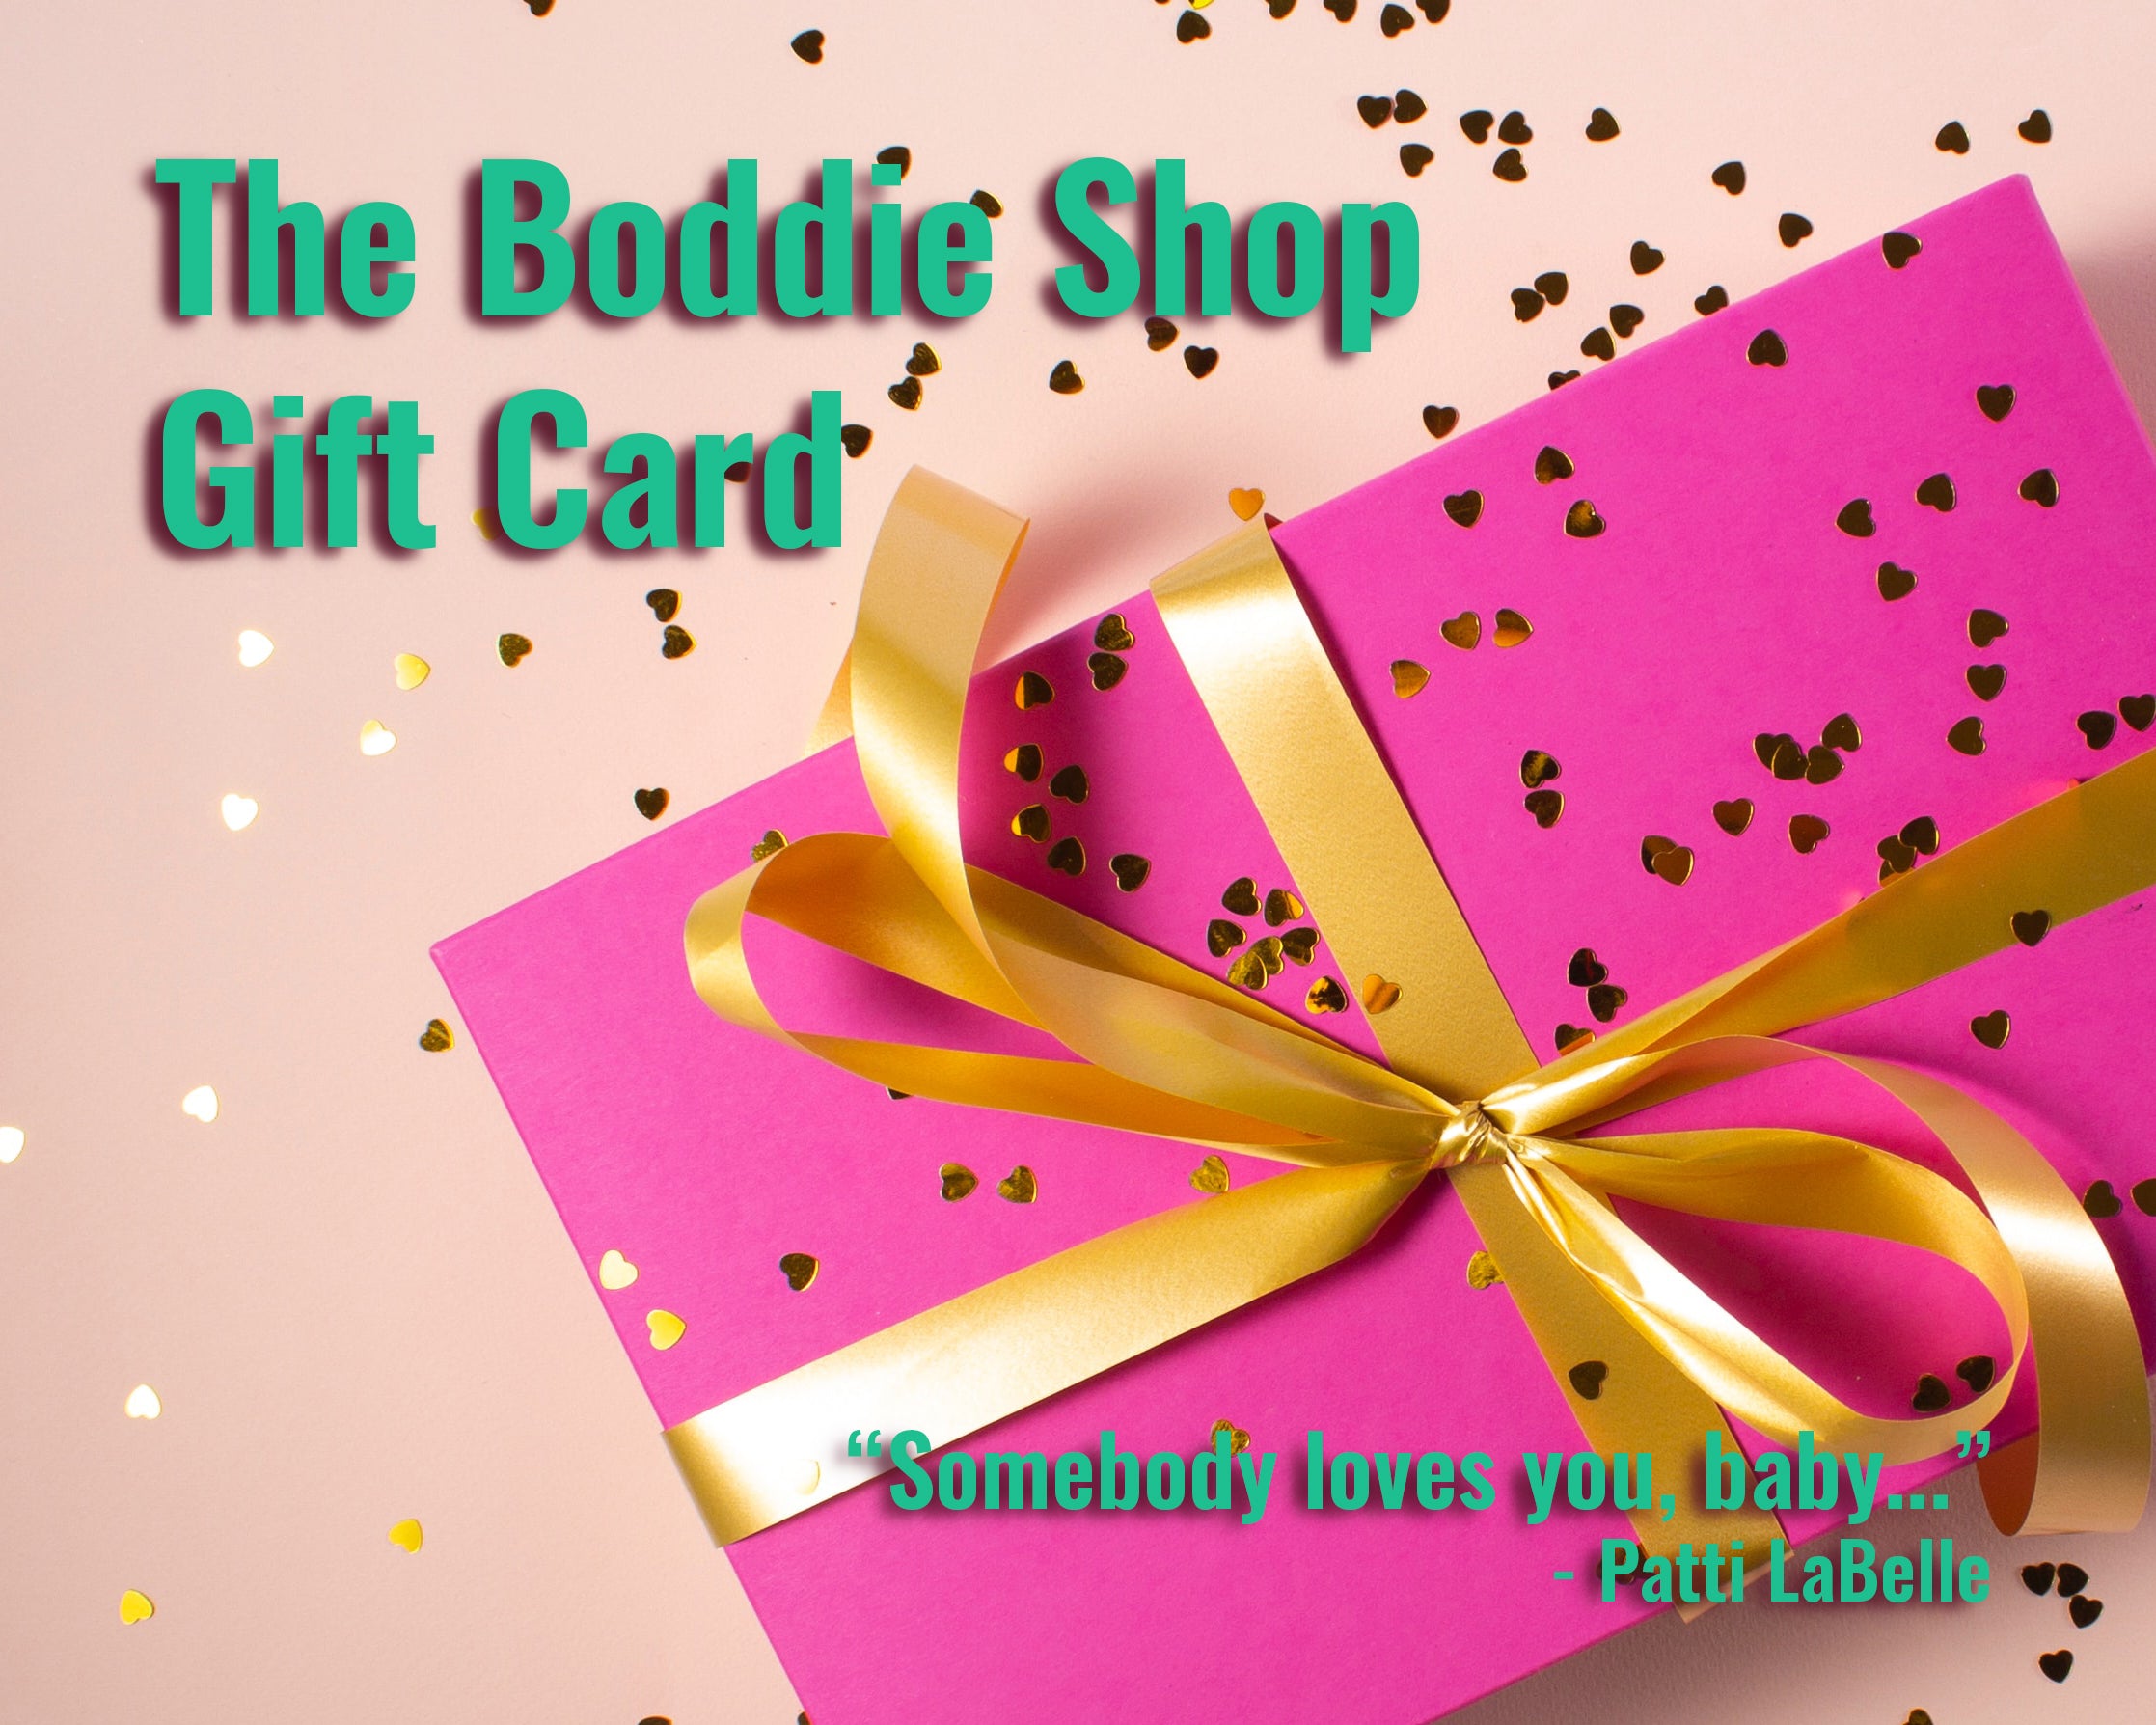 Boddie Shop Gift Cards